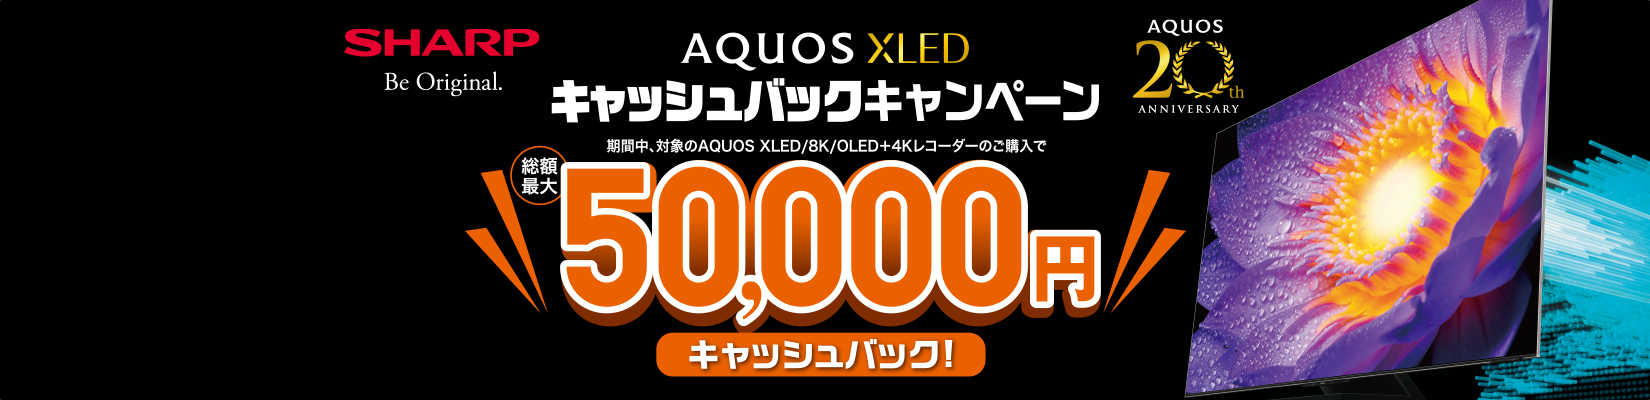 SHARP AQUOS XLED キャッシュバックキャンペーン 総額50,000円キャッシュバック